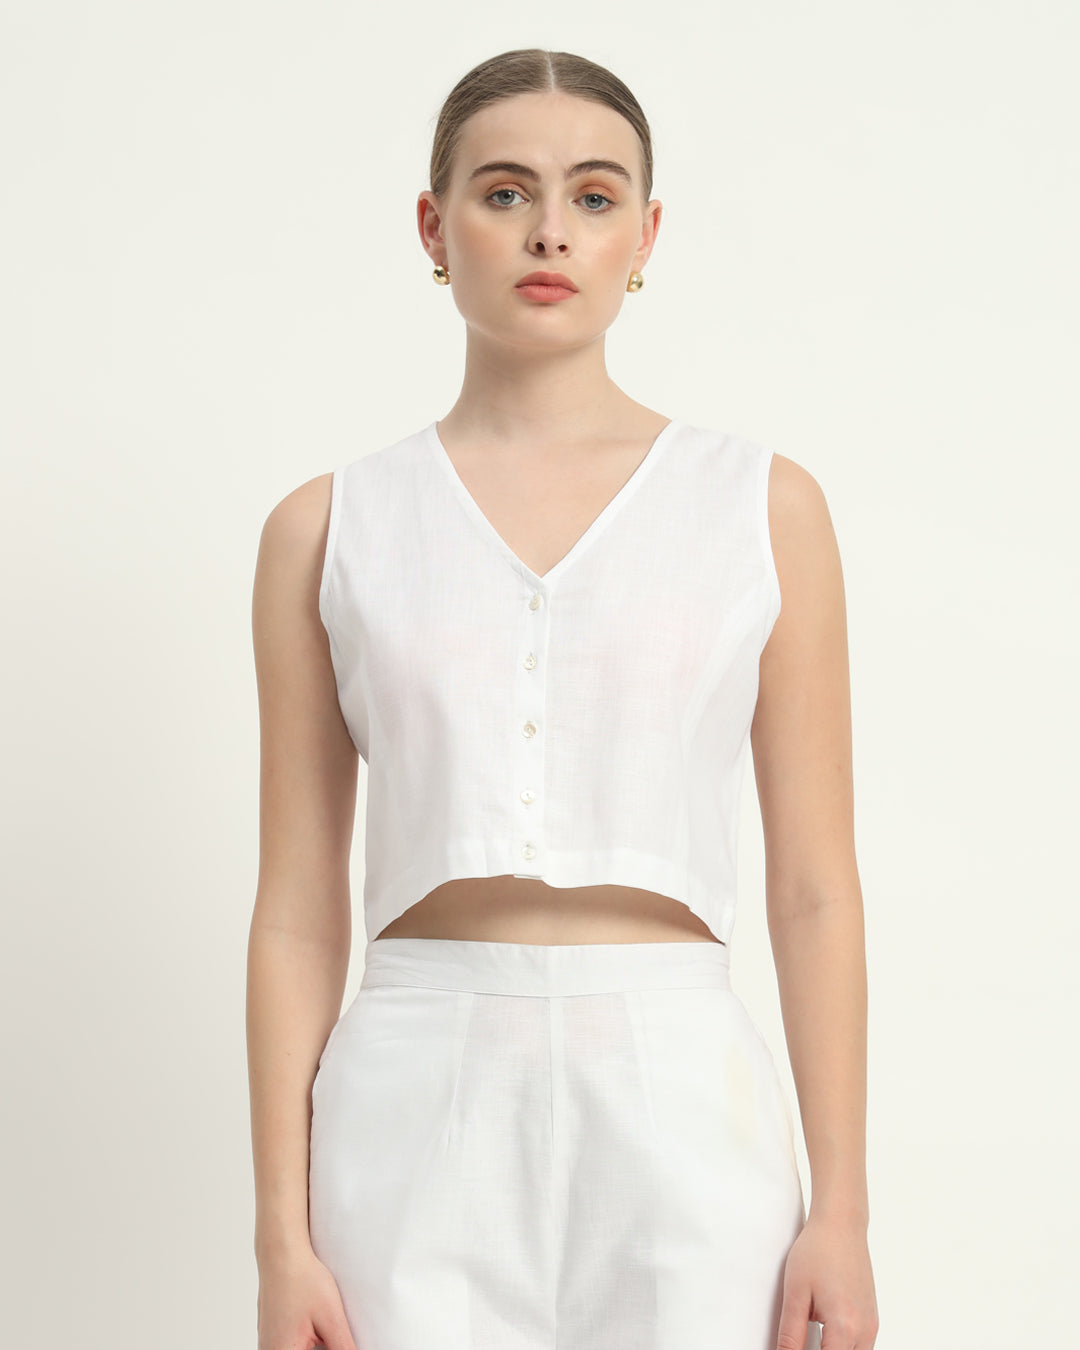 Shorts Matching Set- White Linen Viva La Verve